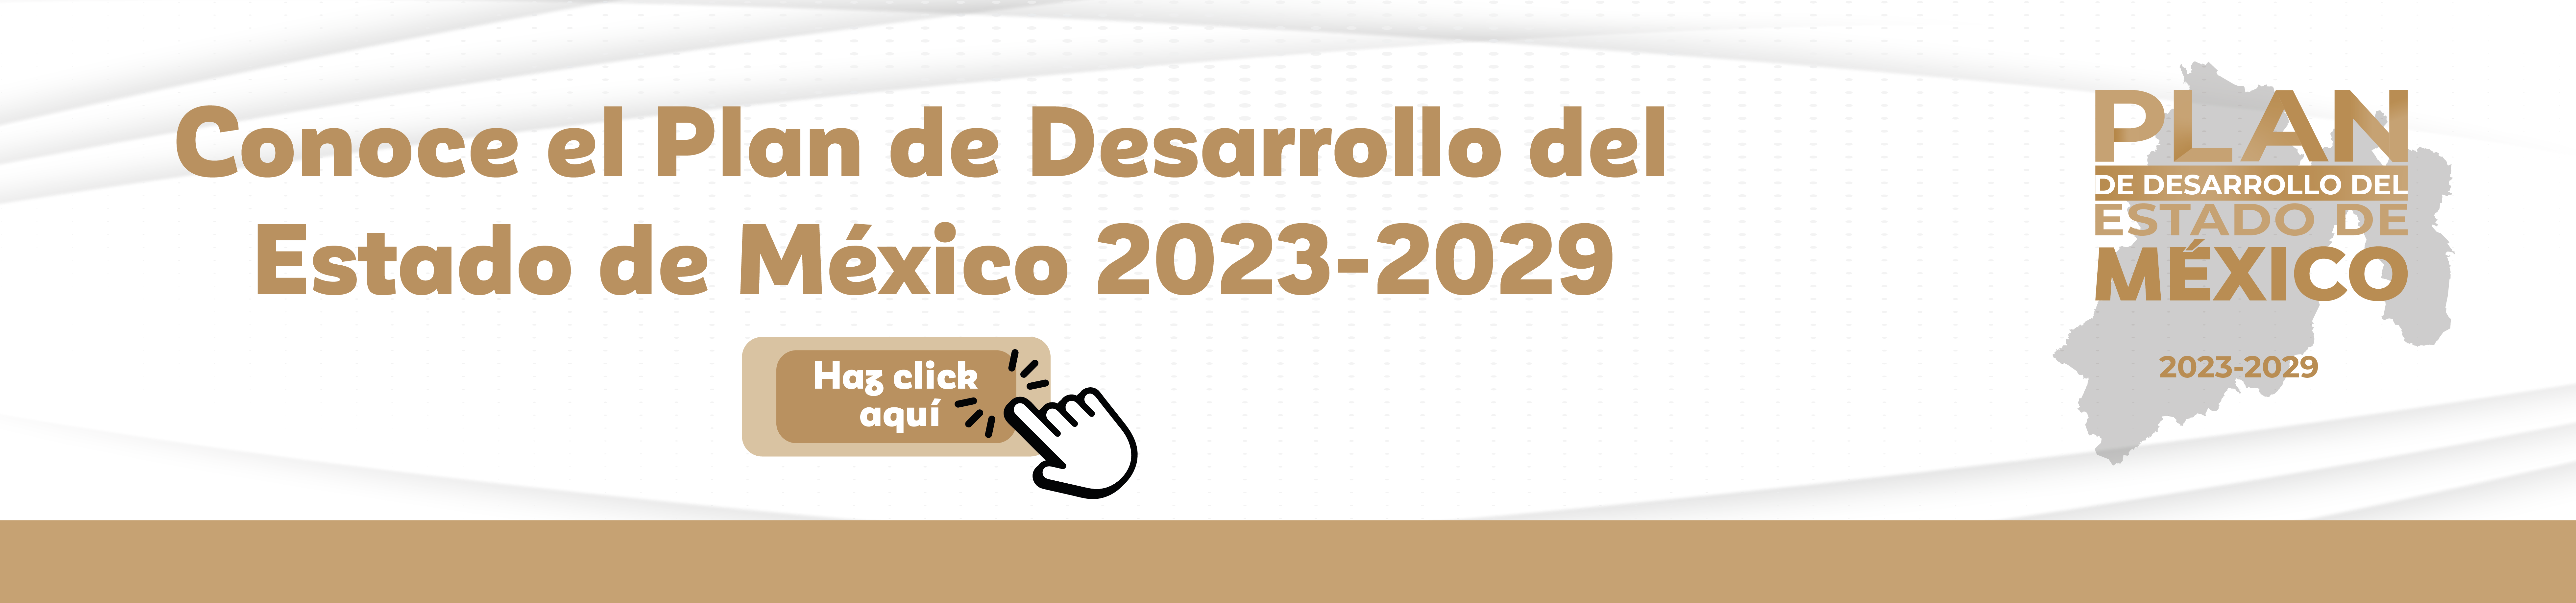 Plan de Desarrollo del Estado de México 2023 - 2029